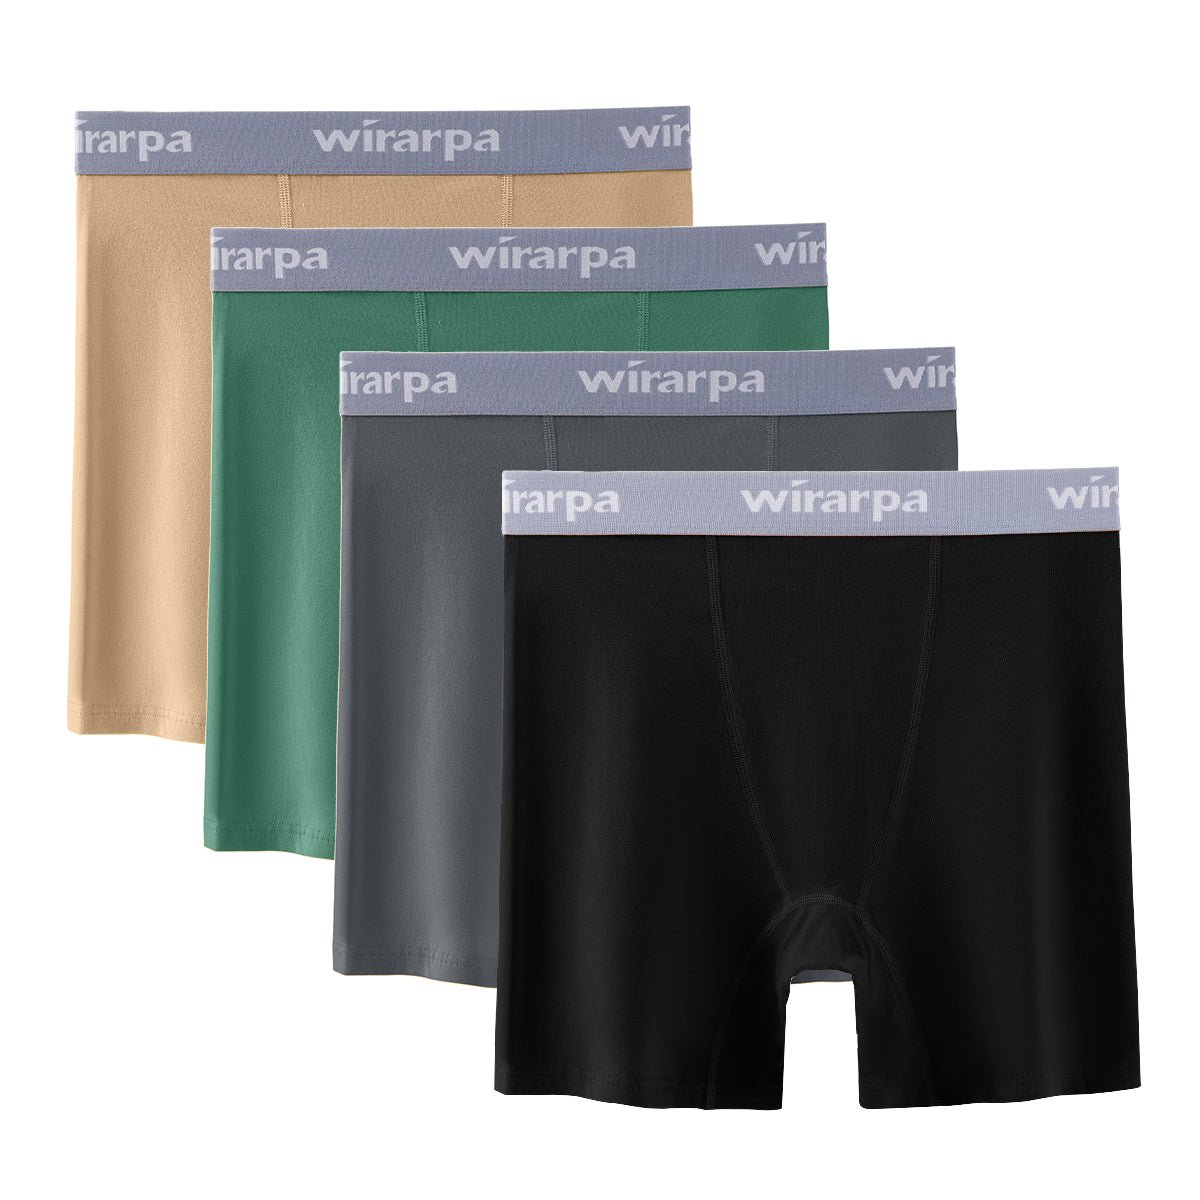 wirarpa Women's Boxer Briefs Cotton Underwear Anti Chafing Boy Shorts  Panties 5.